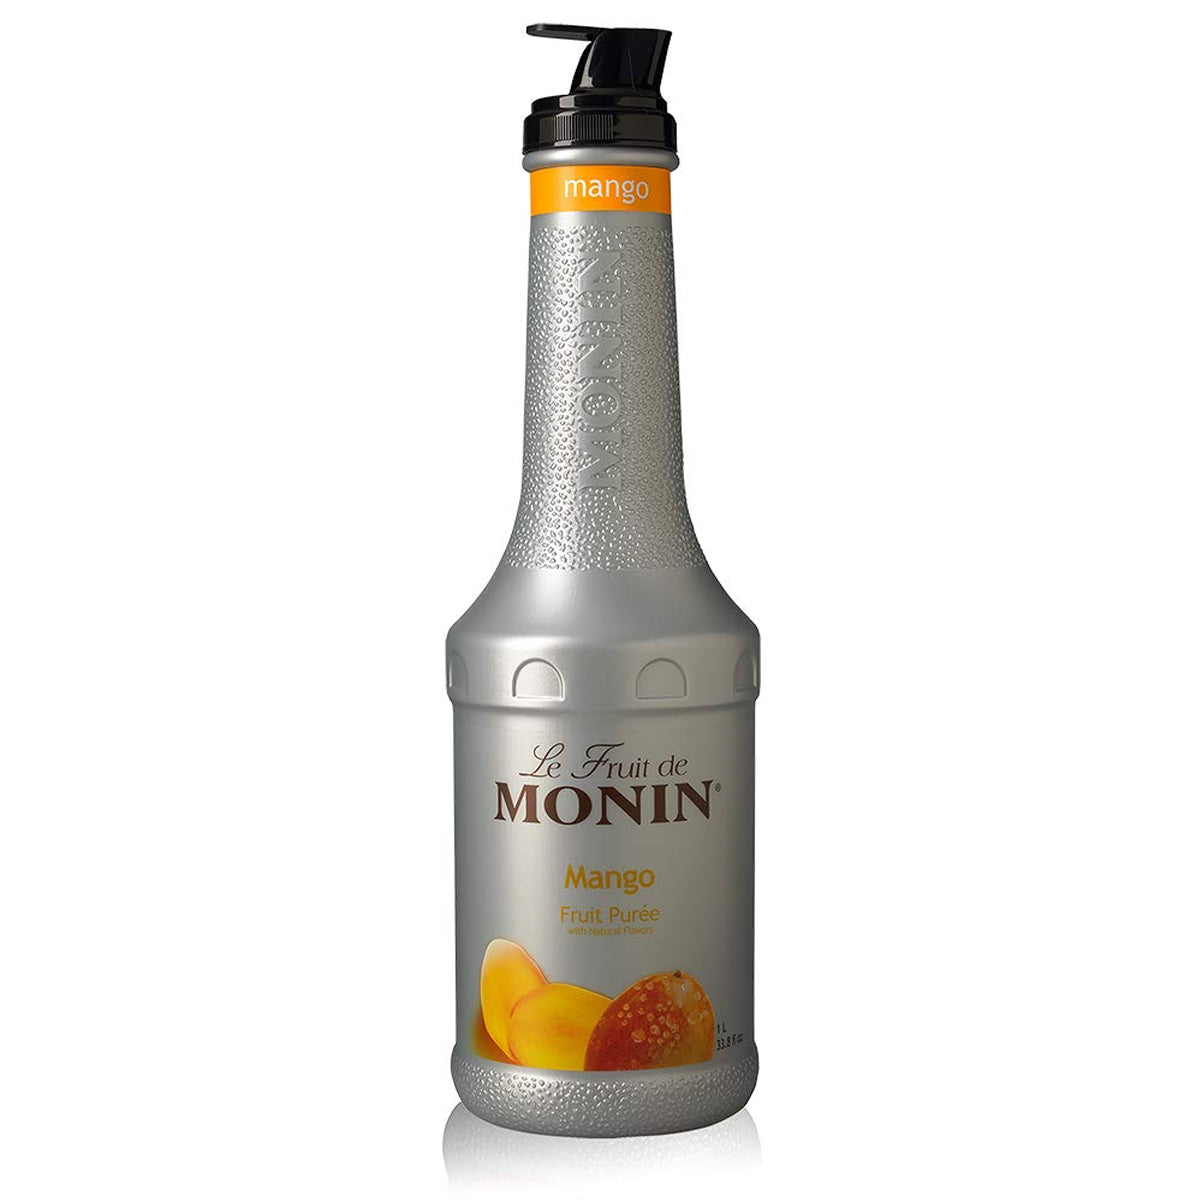 Monin - Mango Purée - Tropical and Sweet Mango Flavor - 1 Liter - Le Fruit De Monin